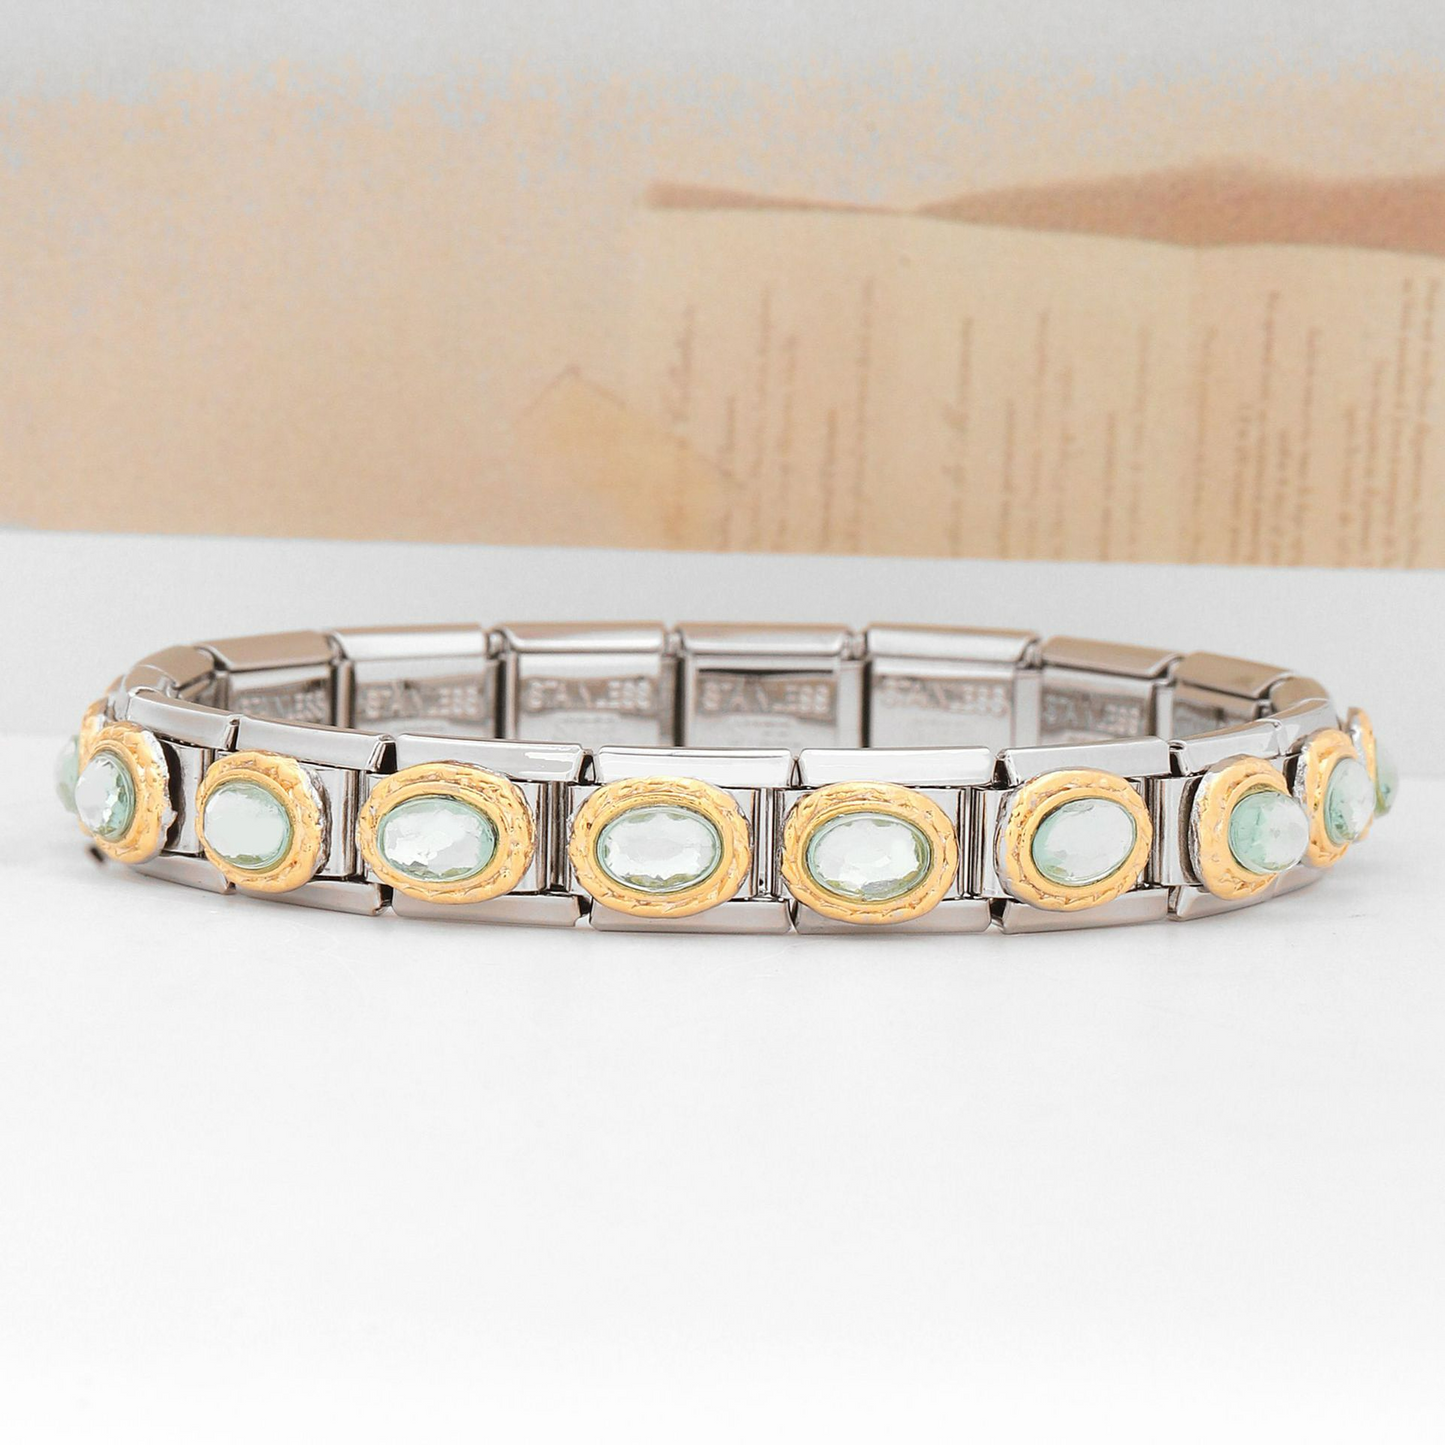 Riley Watson® Original Charms Bracelet